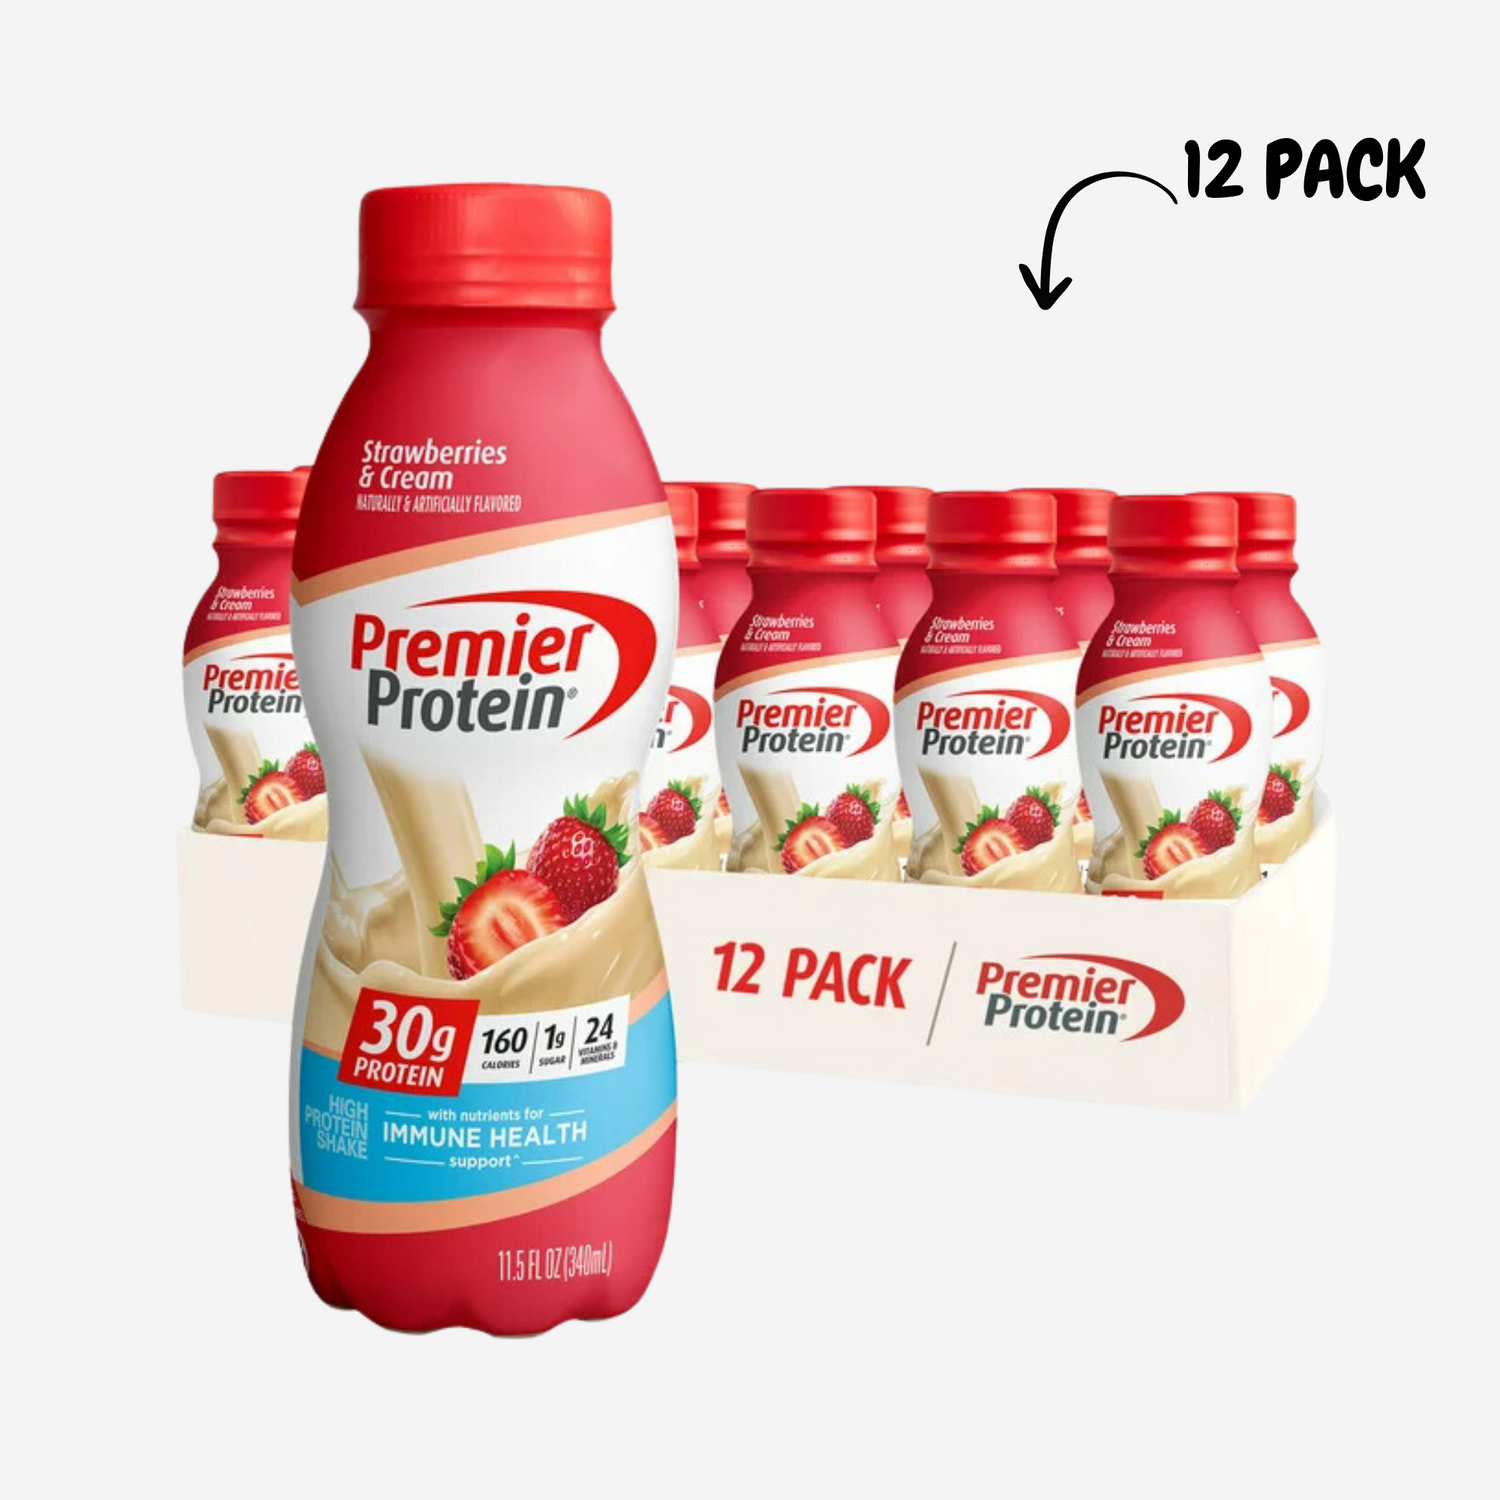 Premier Protein Shake, 30g Protein, 11.5 Fl oz, 12 Count